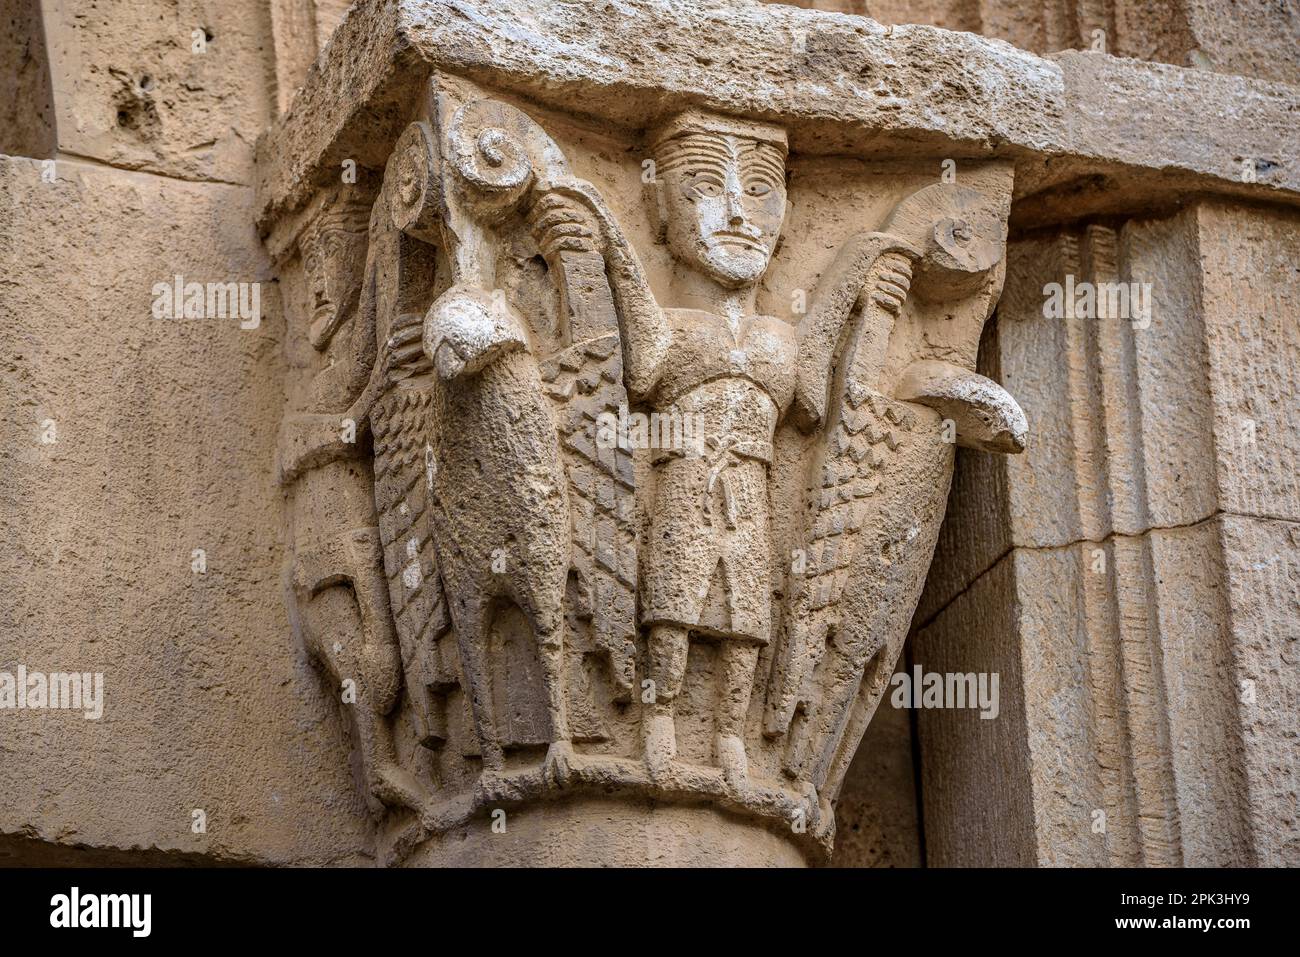 Particolare di una capitale scolpita nel Monastero di Pedralbes (Barcellona, Catalogna, Spagna) ESP: Detalle de un capitel esculpido en el Monasterio Pedralbes Foto Stock